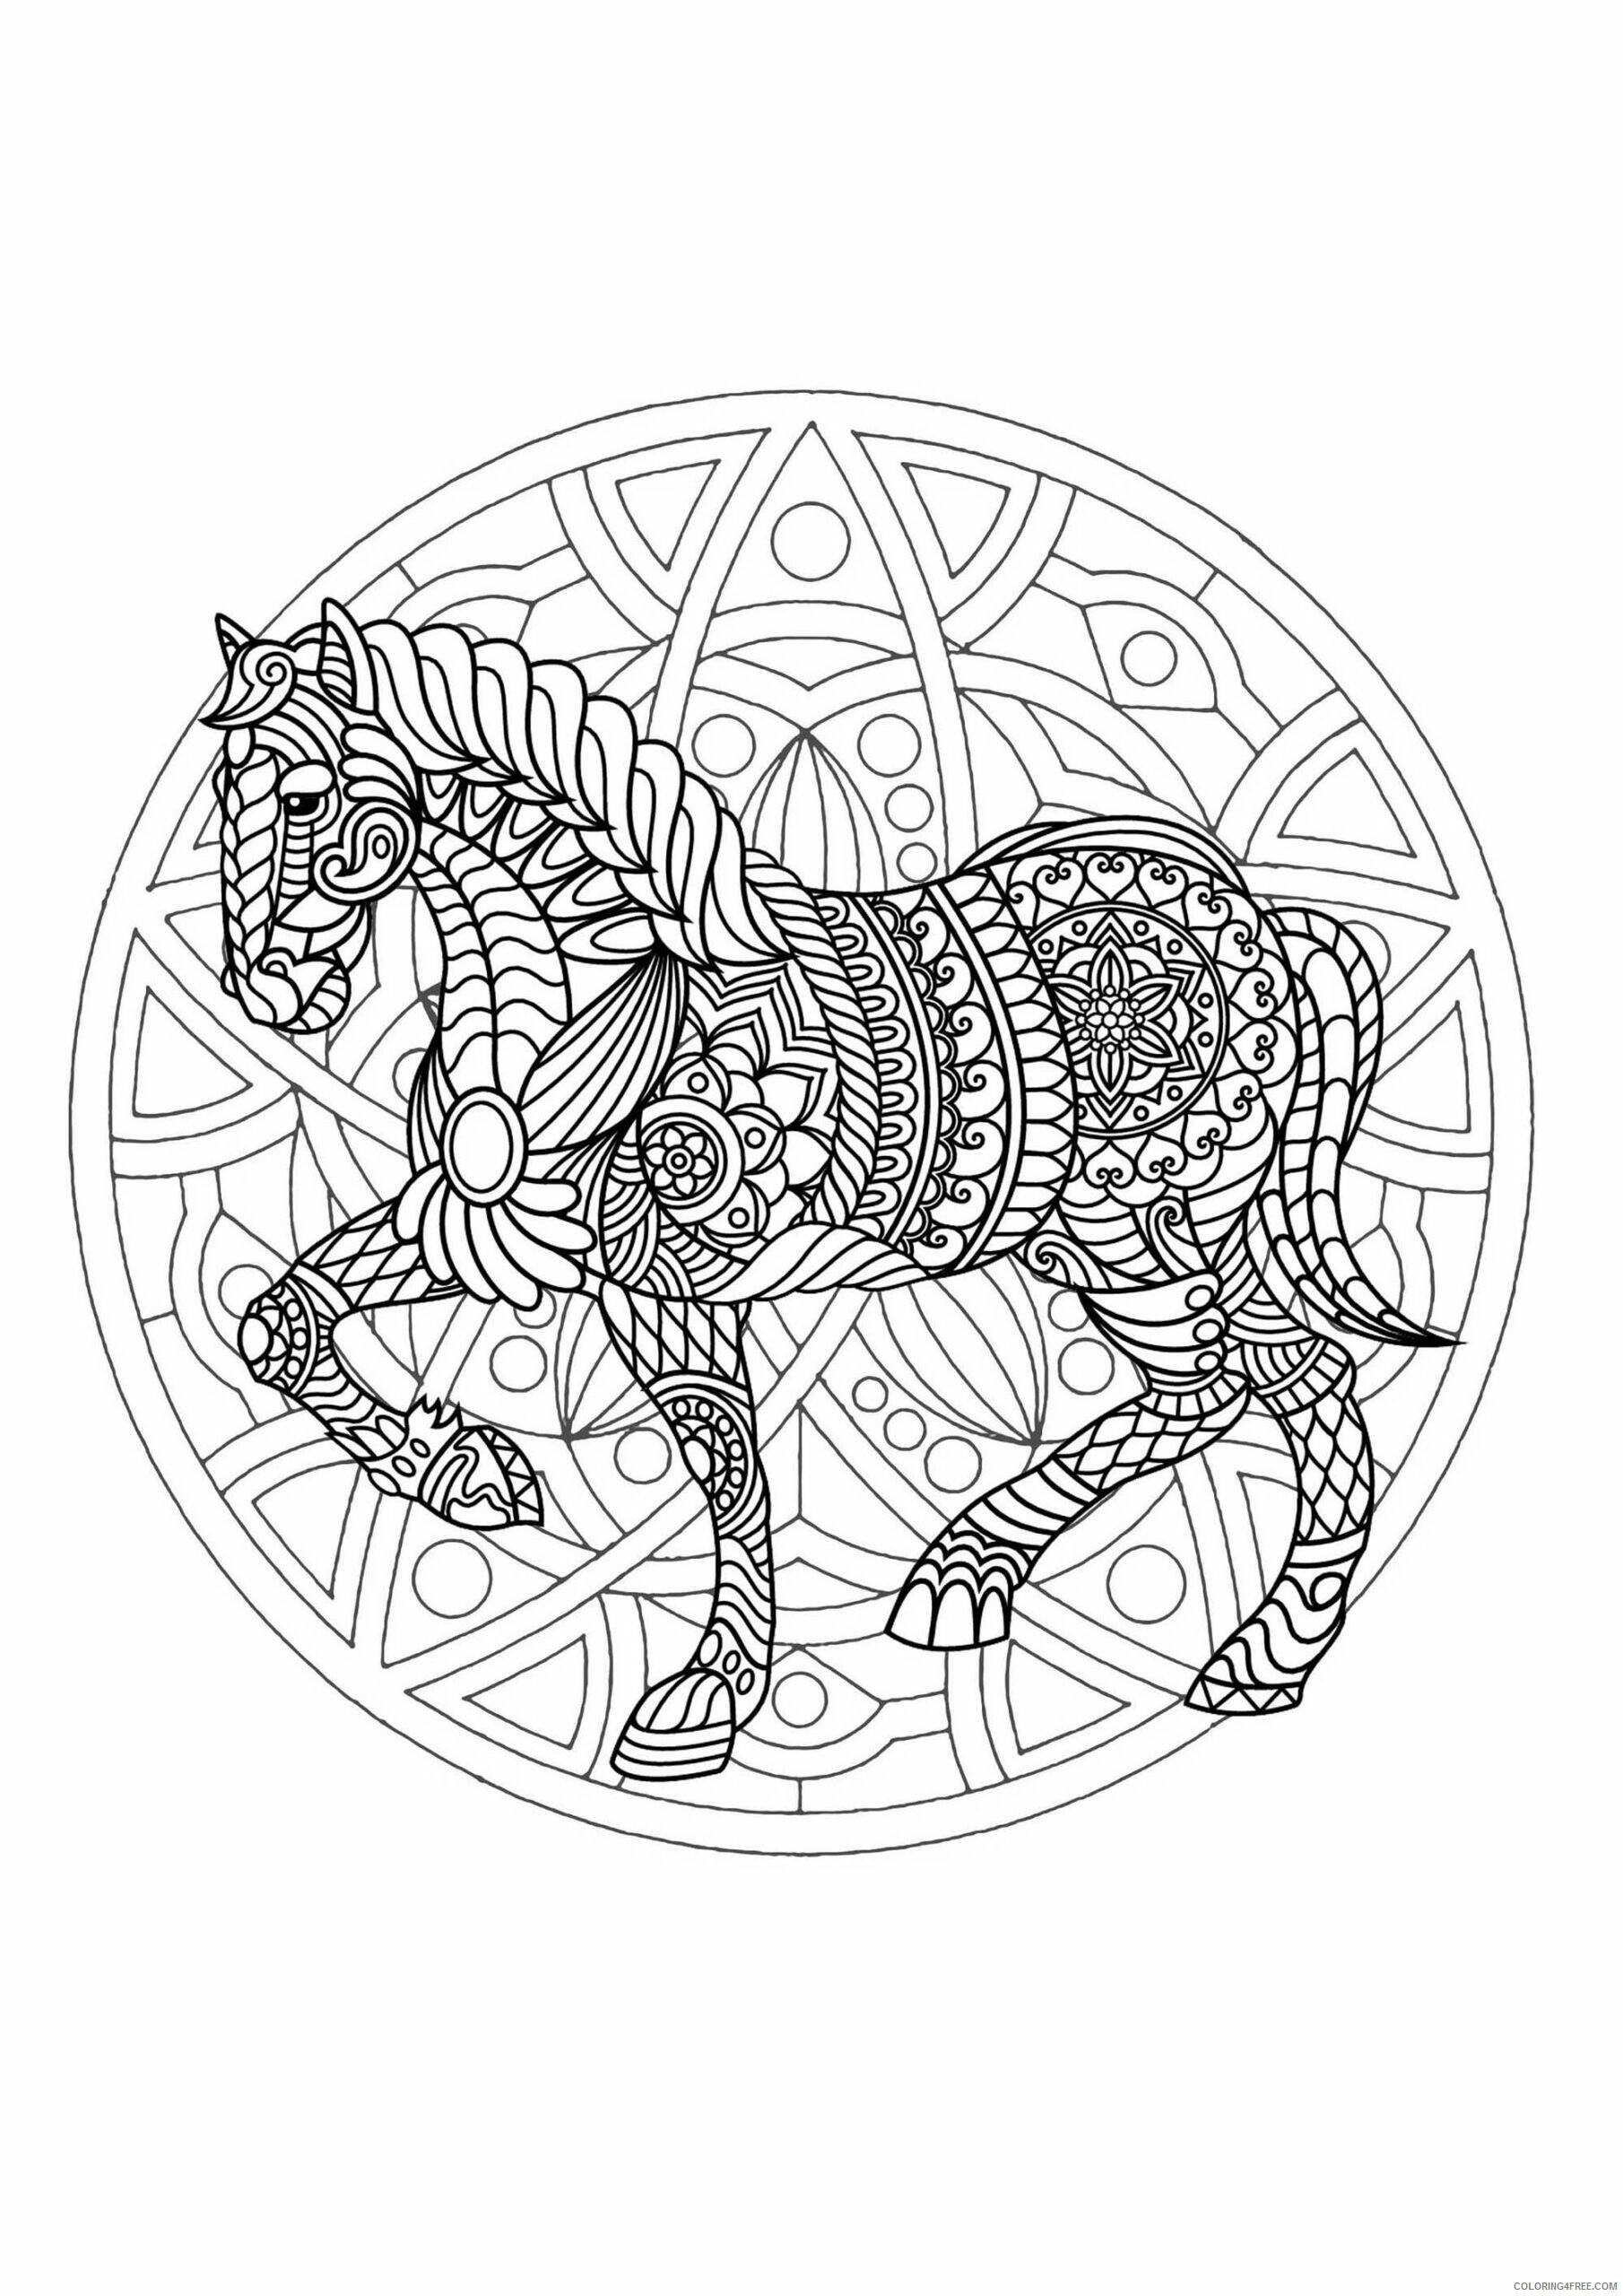 Horses Coloring Pages Animal Printable Sheets Horse Animal Mandala 2021 2757 Coloring4free